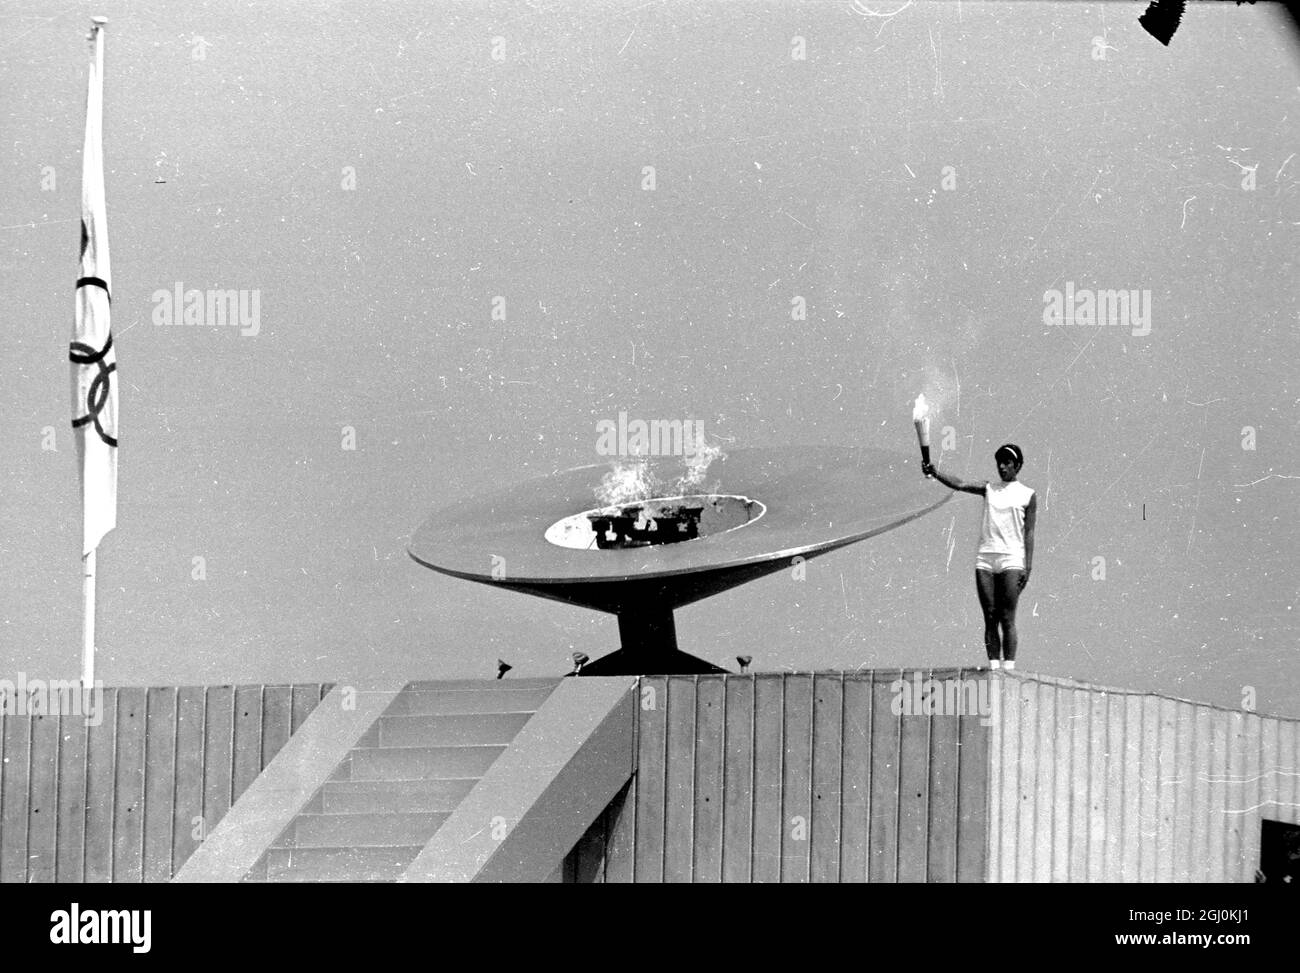 Città del Messico: Sopra lo Stadio Olimpico il ciclone messicano, Enriqueta Basilo, accende la fiamma per le Olimpiadi del 1968. È la prima donna nella storia delle Olimpiadi moderne ad avere l'onore. La cerimonia ha segnalato l'inizio dei giochi il 12 ottobre. 15 ottobre 1968 Foto Stock